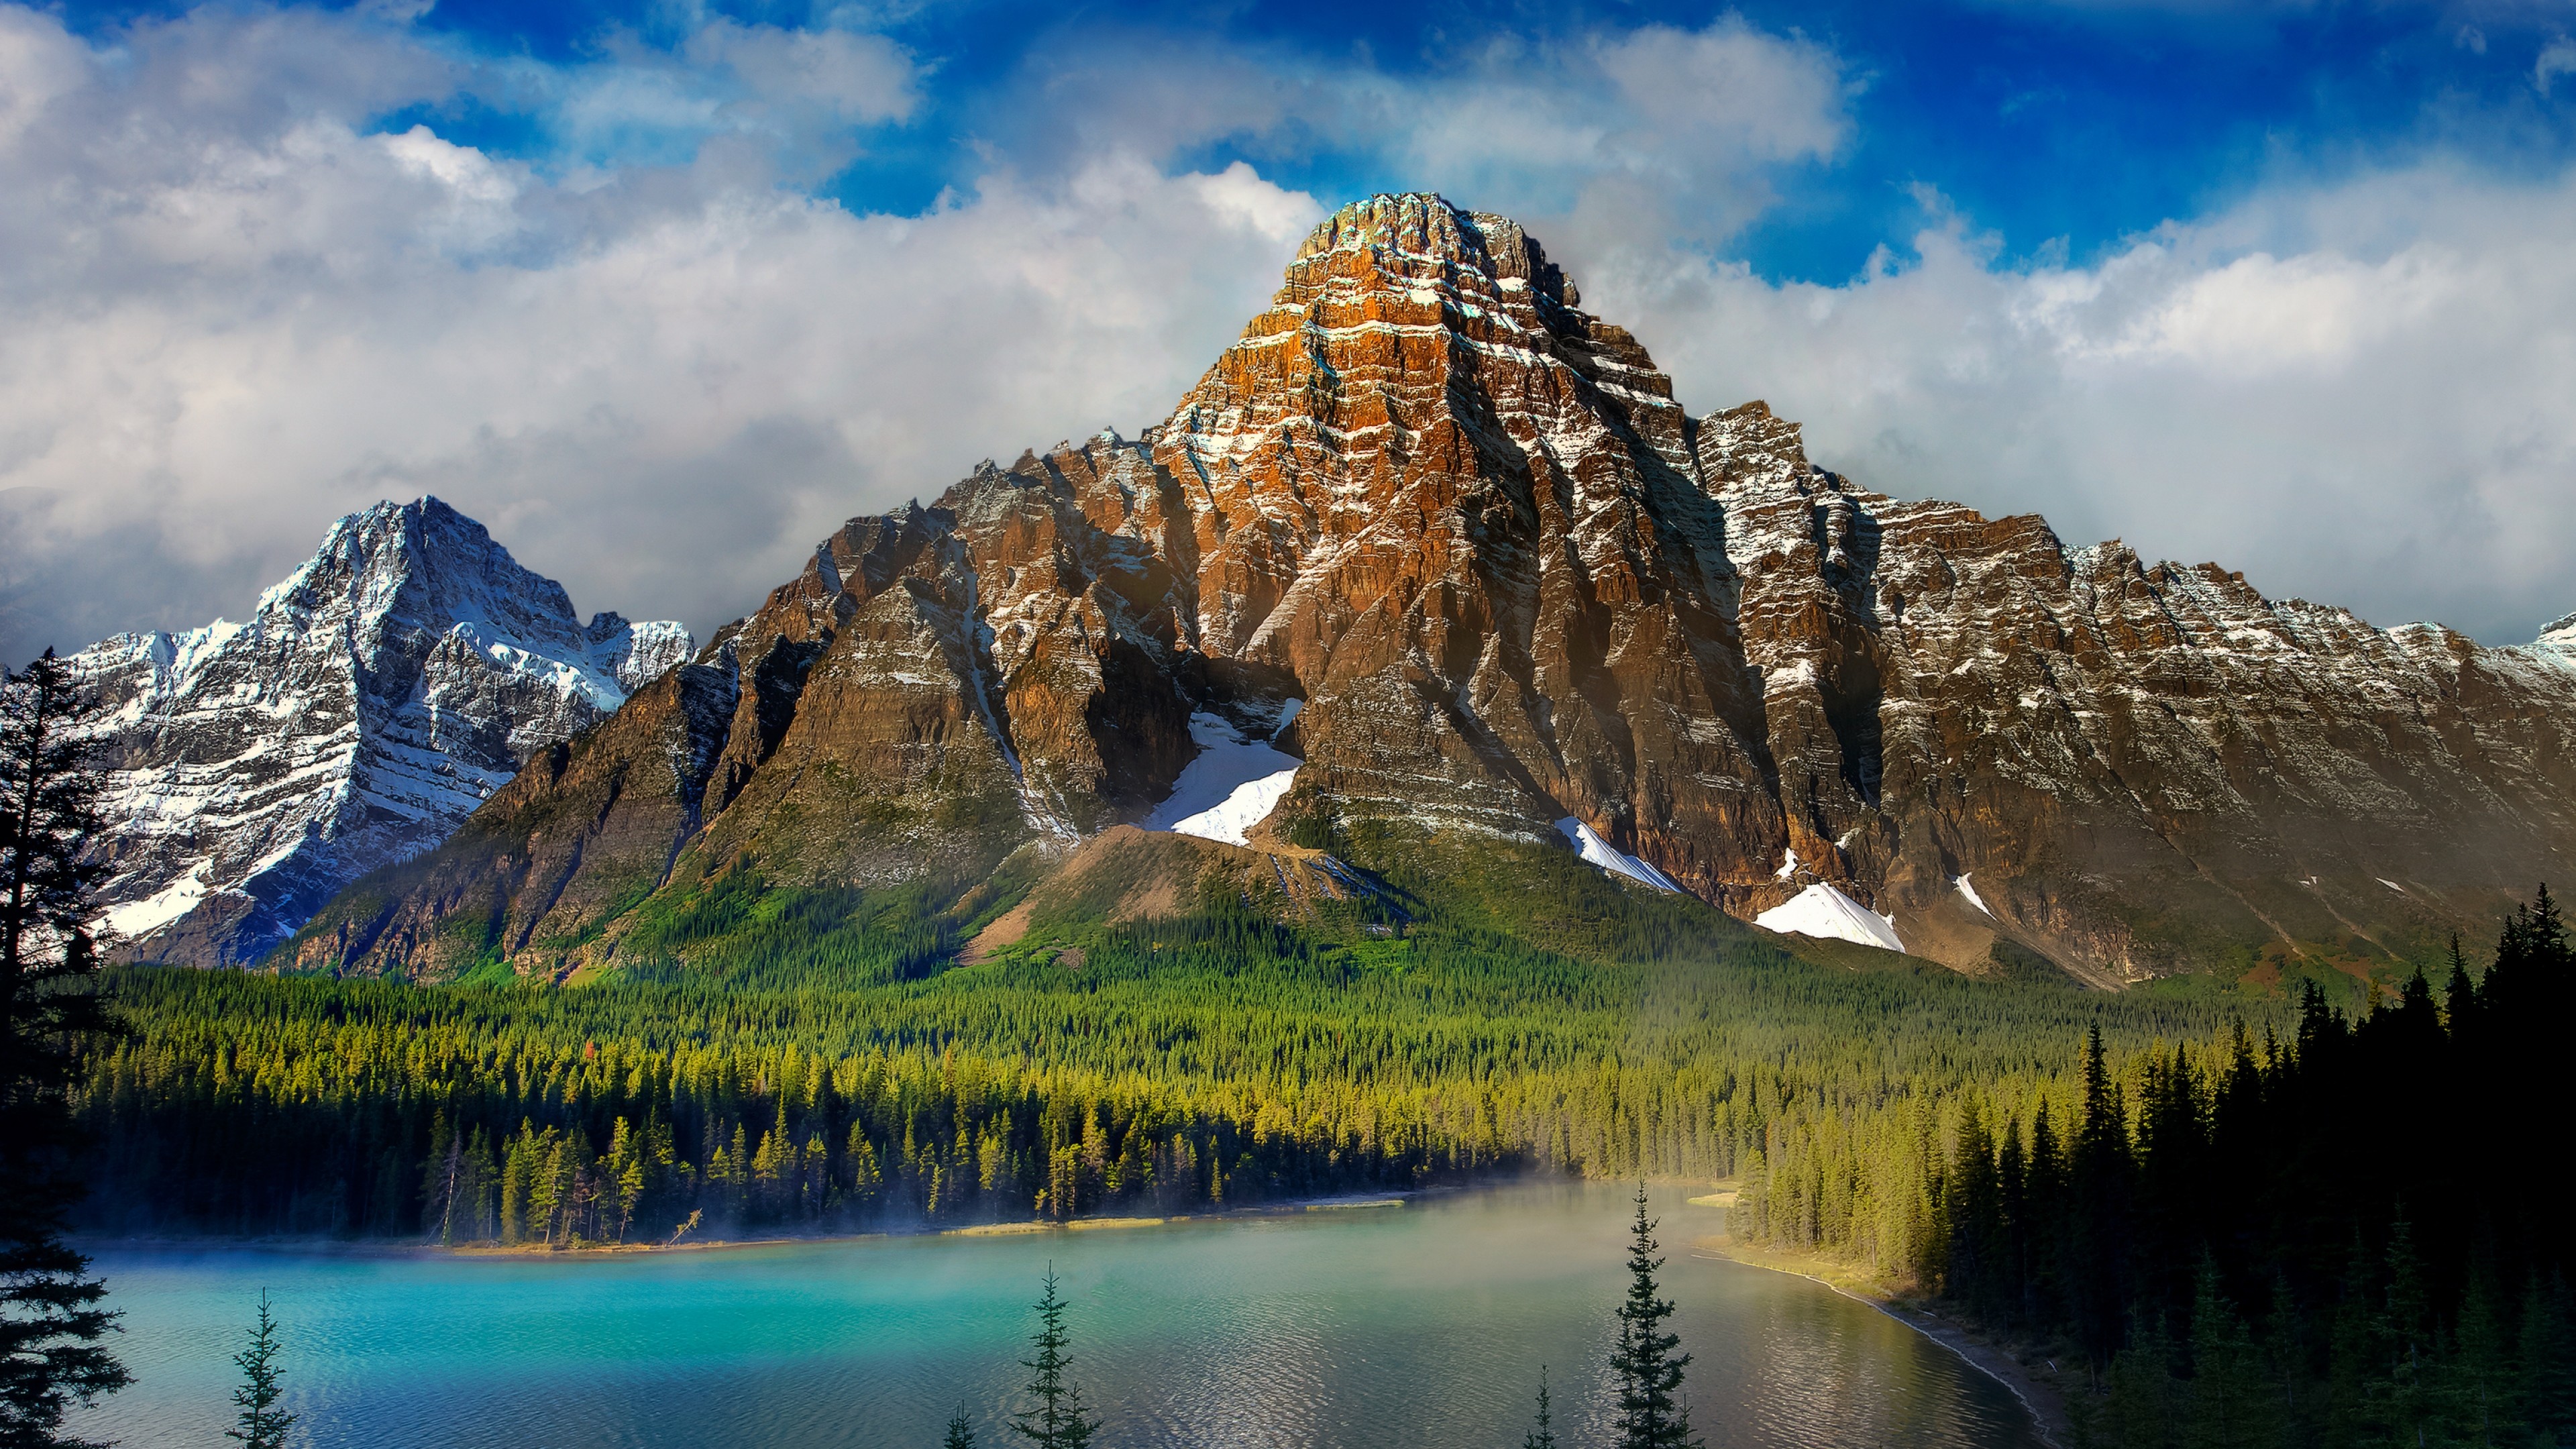 3840x2160 ... Background 4K Ultra HD.  Wallpaper beautiful scenery,  mountains, lake, nature